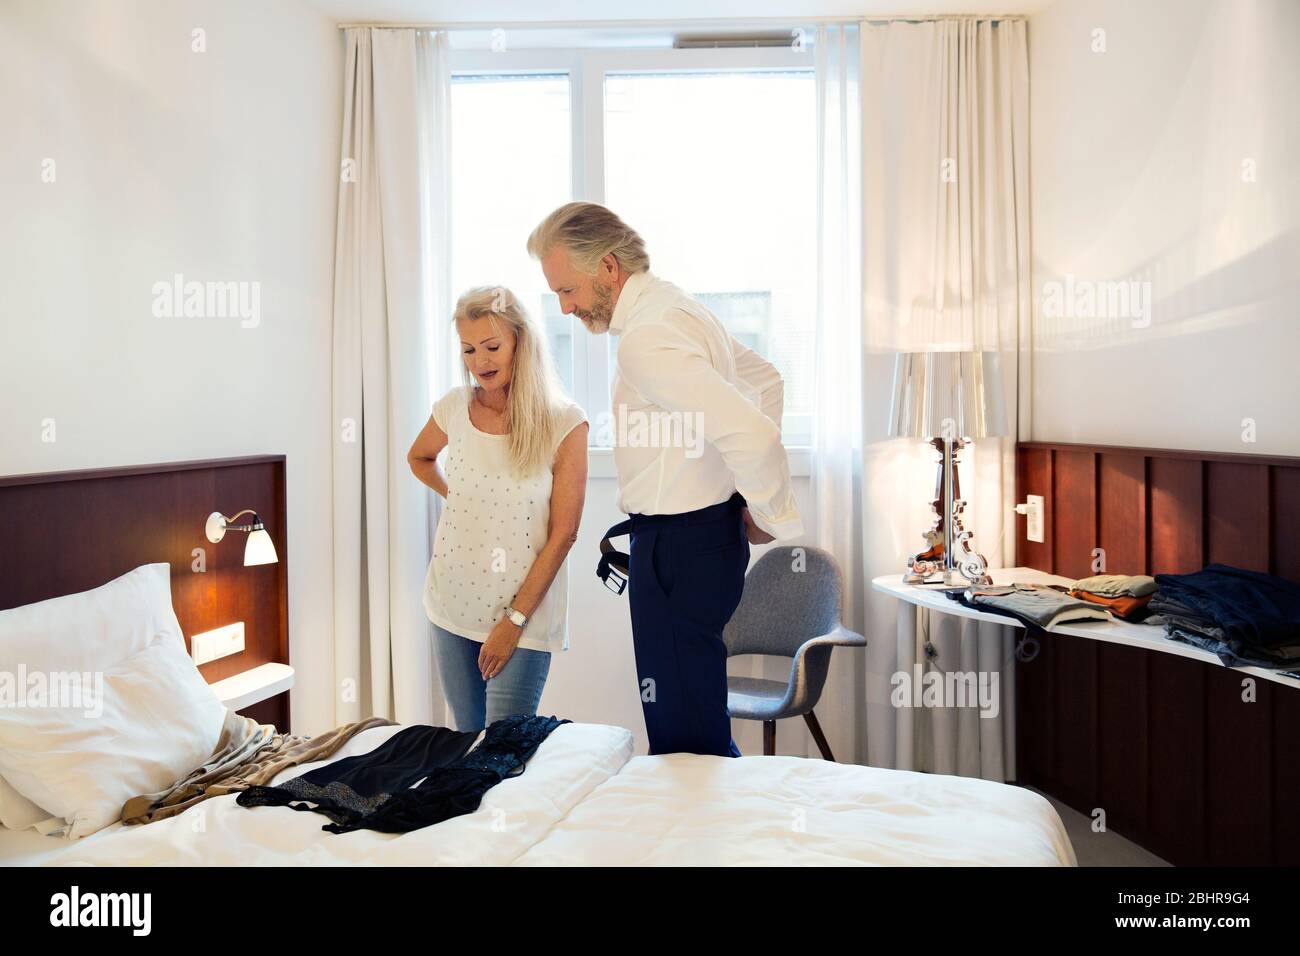 Una coppia in piedi in una camera d'albergo che guarda i vestiti disposti sul letto. Foto Stock